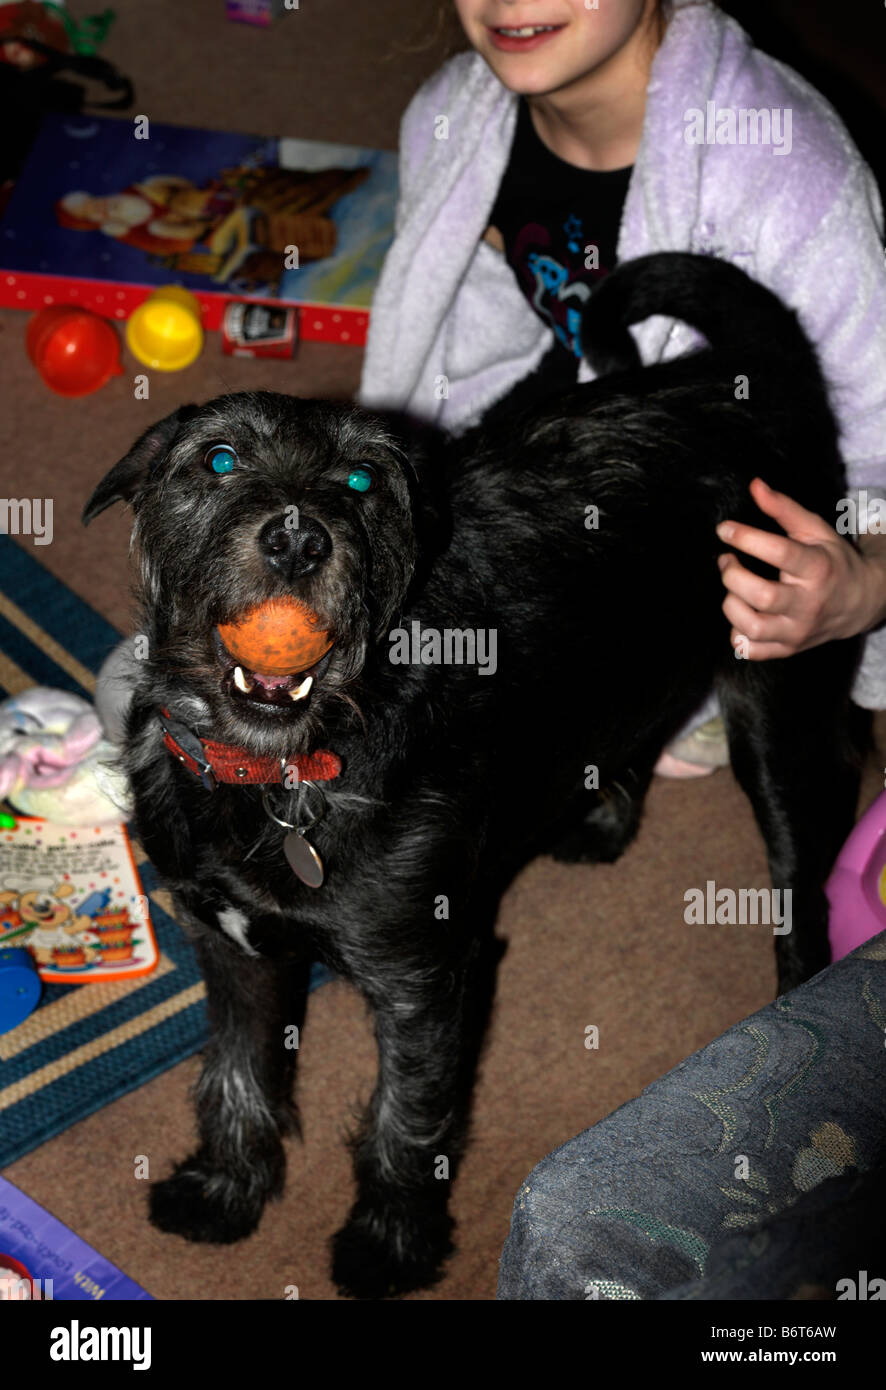 Ball im mund -Fotos und -Bildmaterial in hoher Auflösung – Alamy